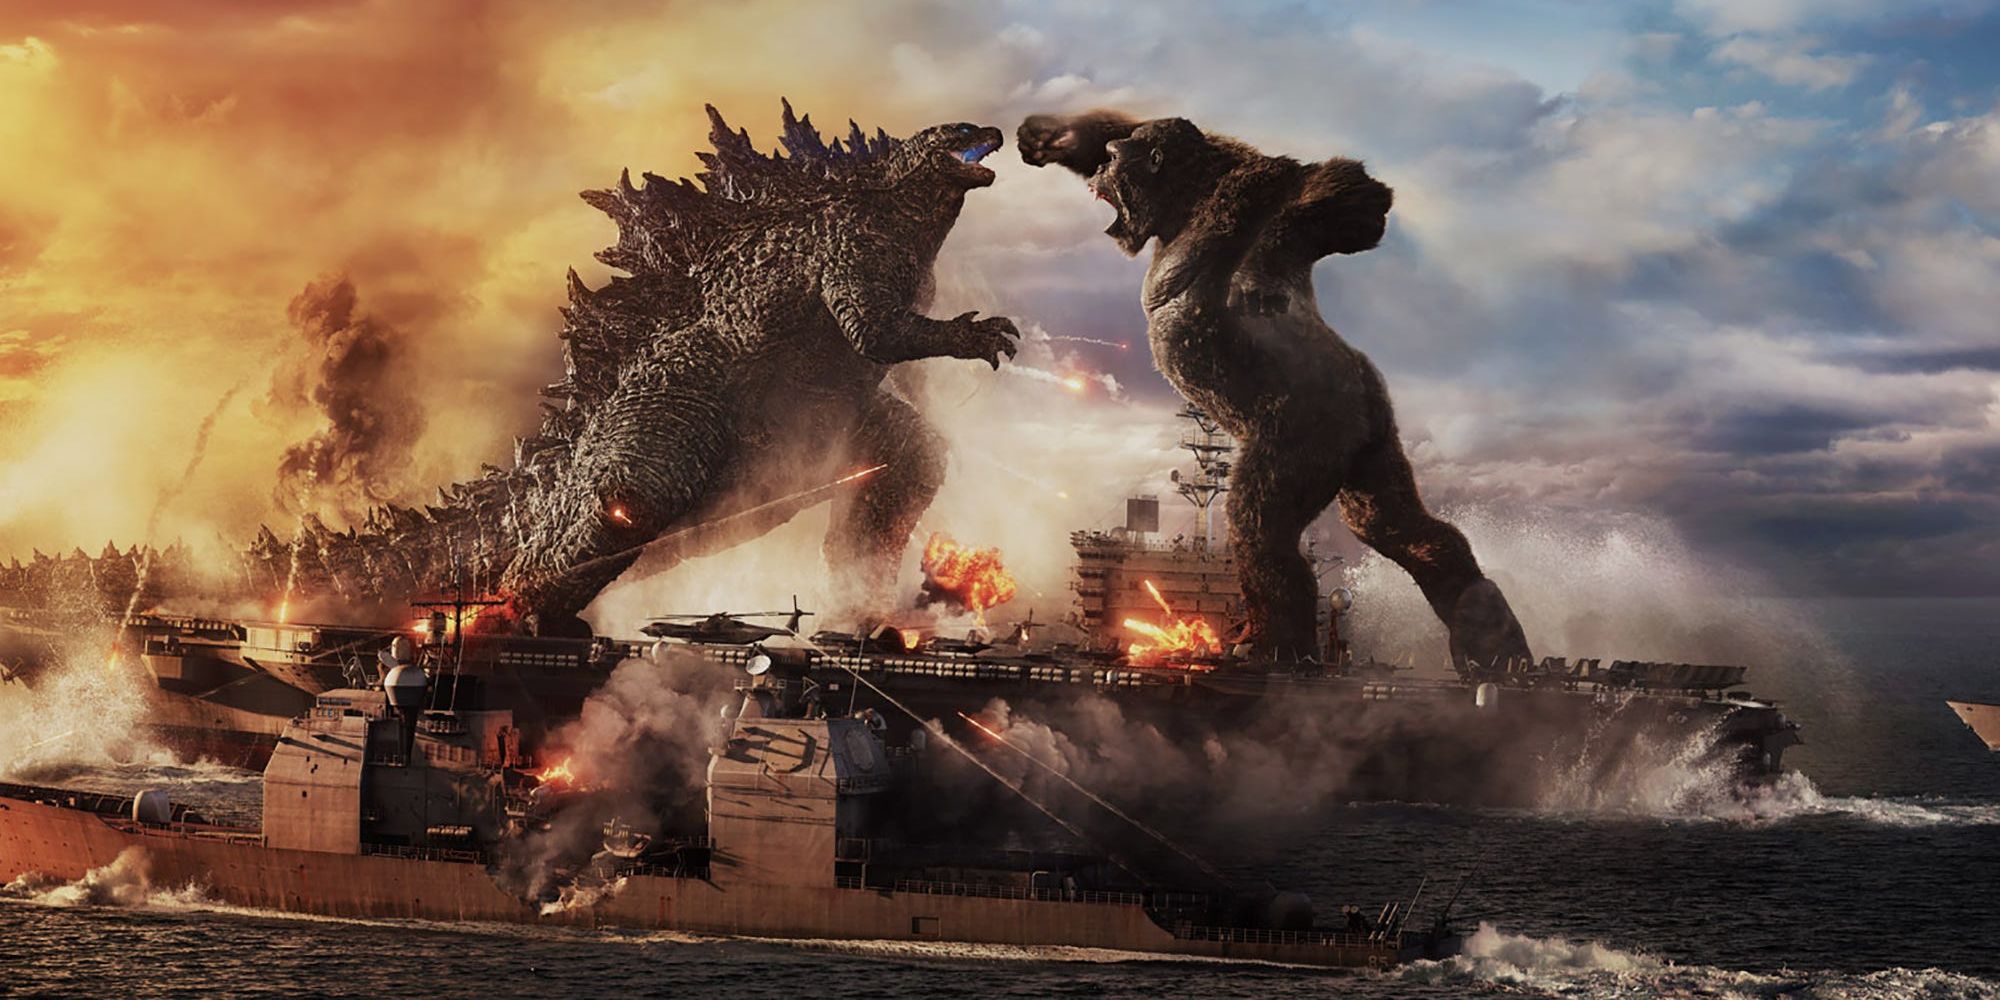 Godzilla and Kong's first battle in Godzilla vs. Kong